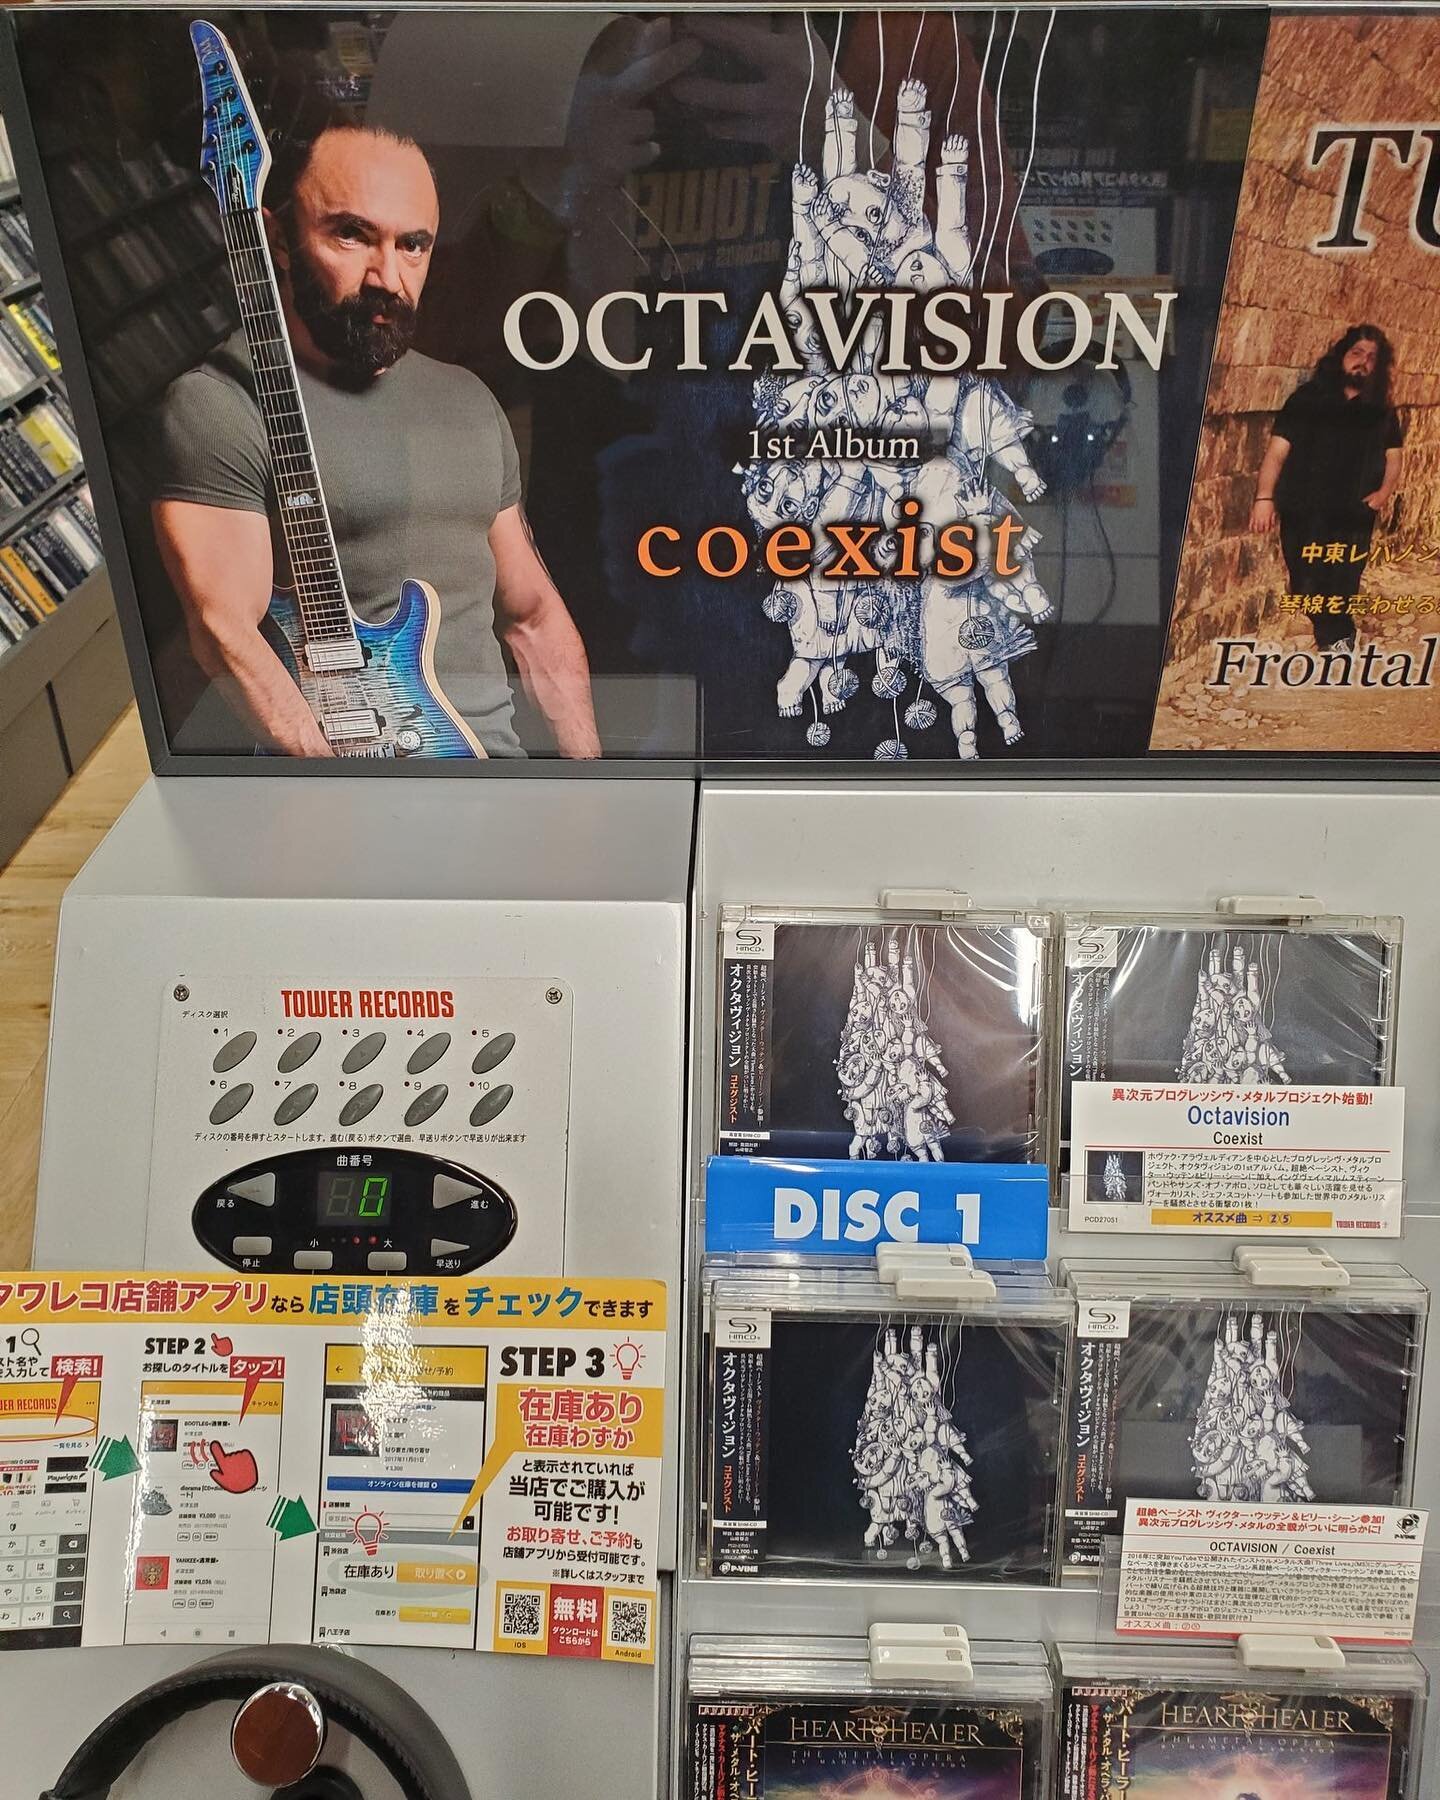 &ldquo;Coexist&rdquo; CD is now available in Japan 🇯🇵 🎶
________________________________
.
.
.
.
.
.
.
.
#octavision #progmetal #metalmusic #progrock #newalbum #instamusic #newmusic #progressivemetal 
#progressicerock #victorwooten #billysheehan #